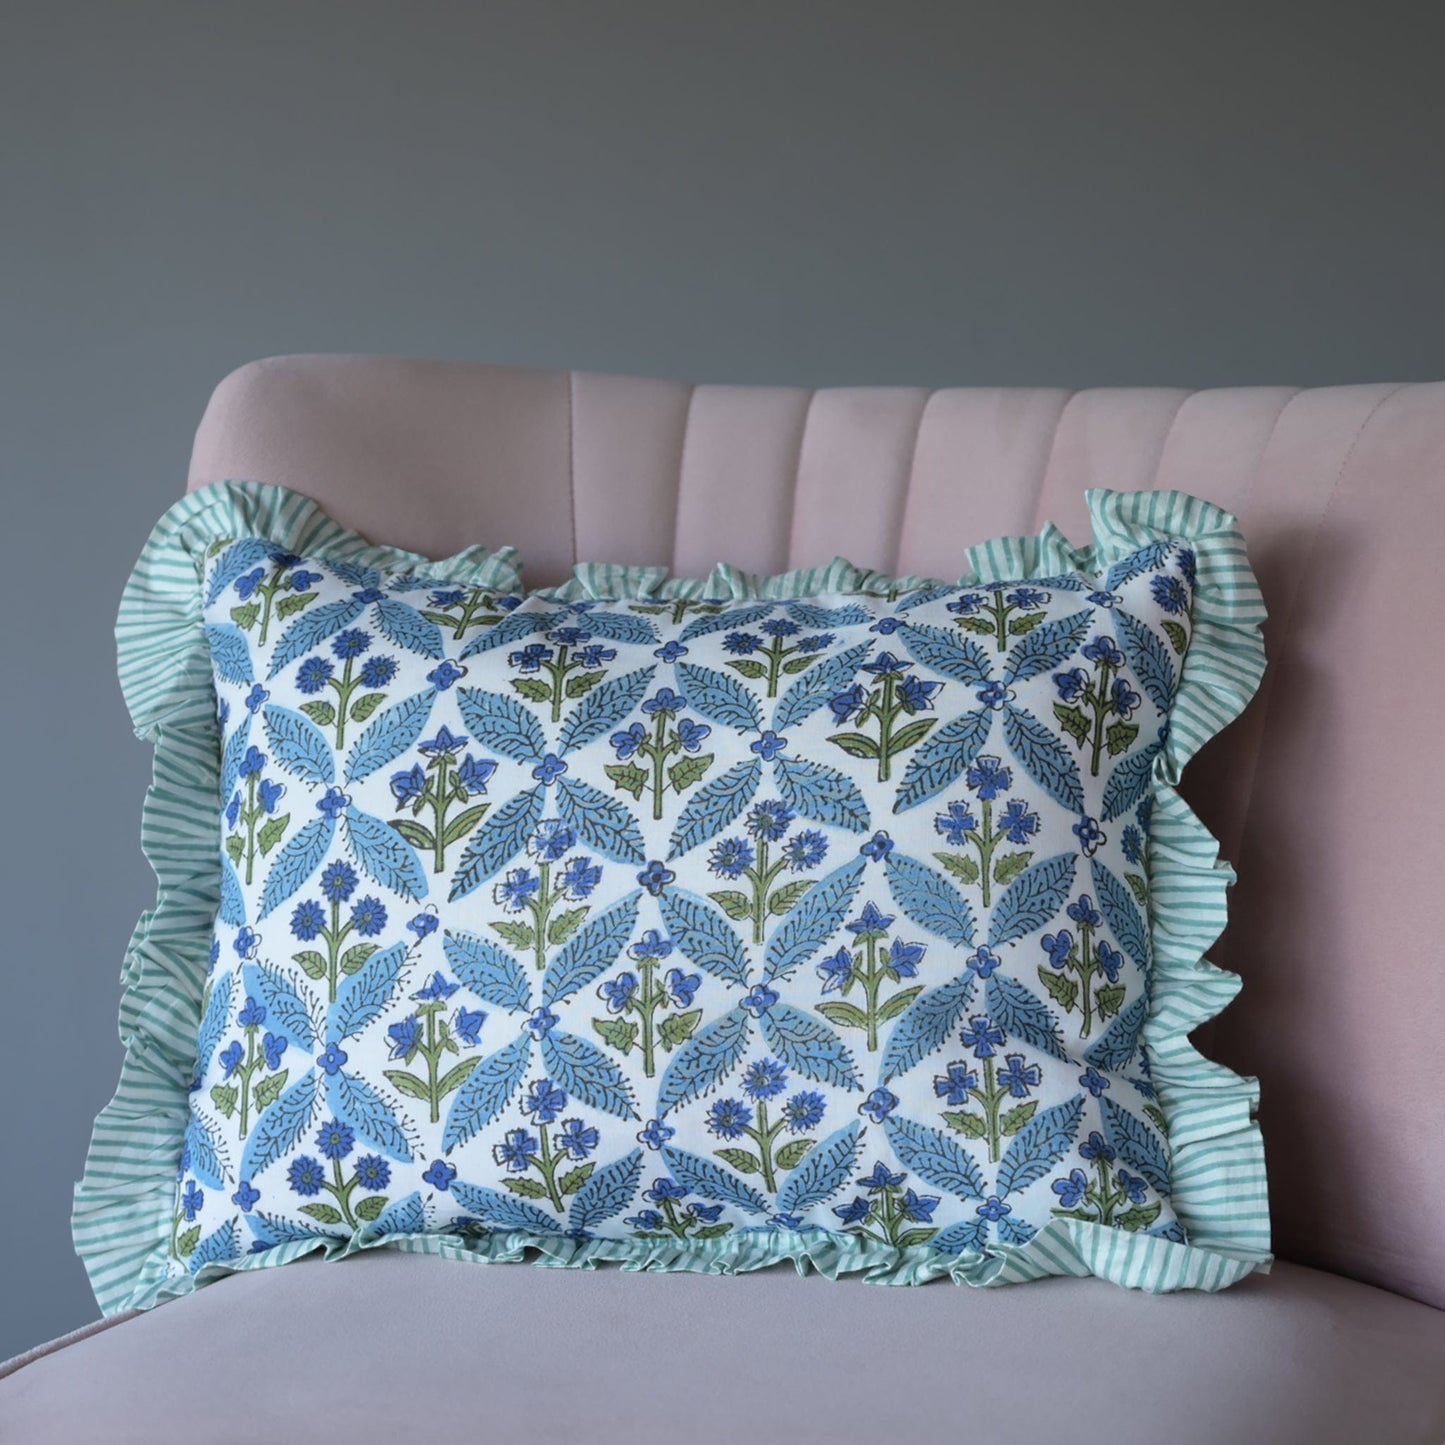 Cushions Small Ruffle Cushion - Blue Floral Symmetrical Green & White Frill 19123